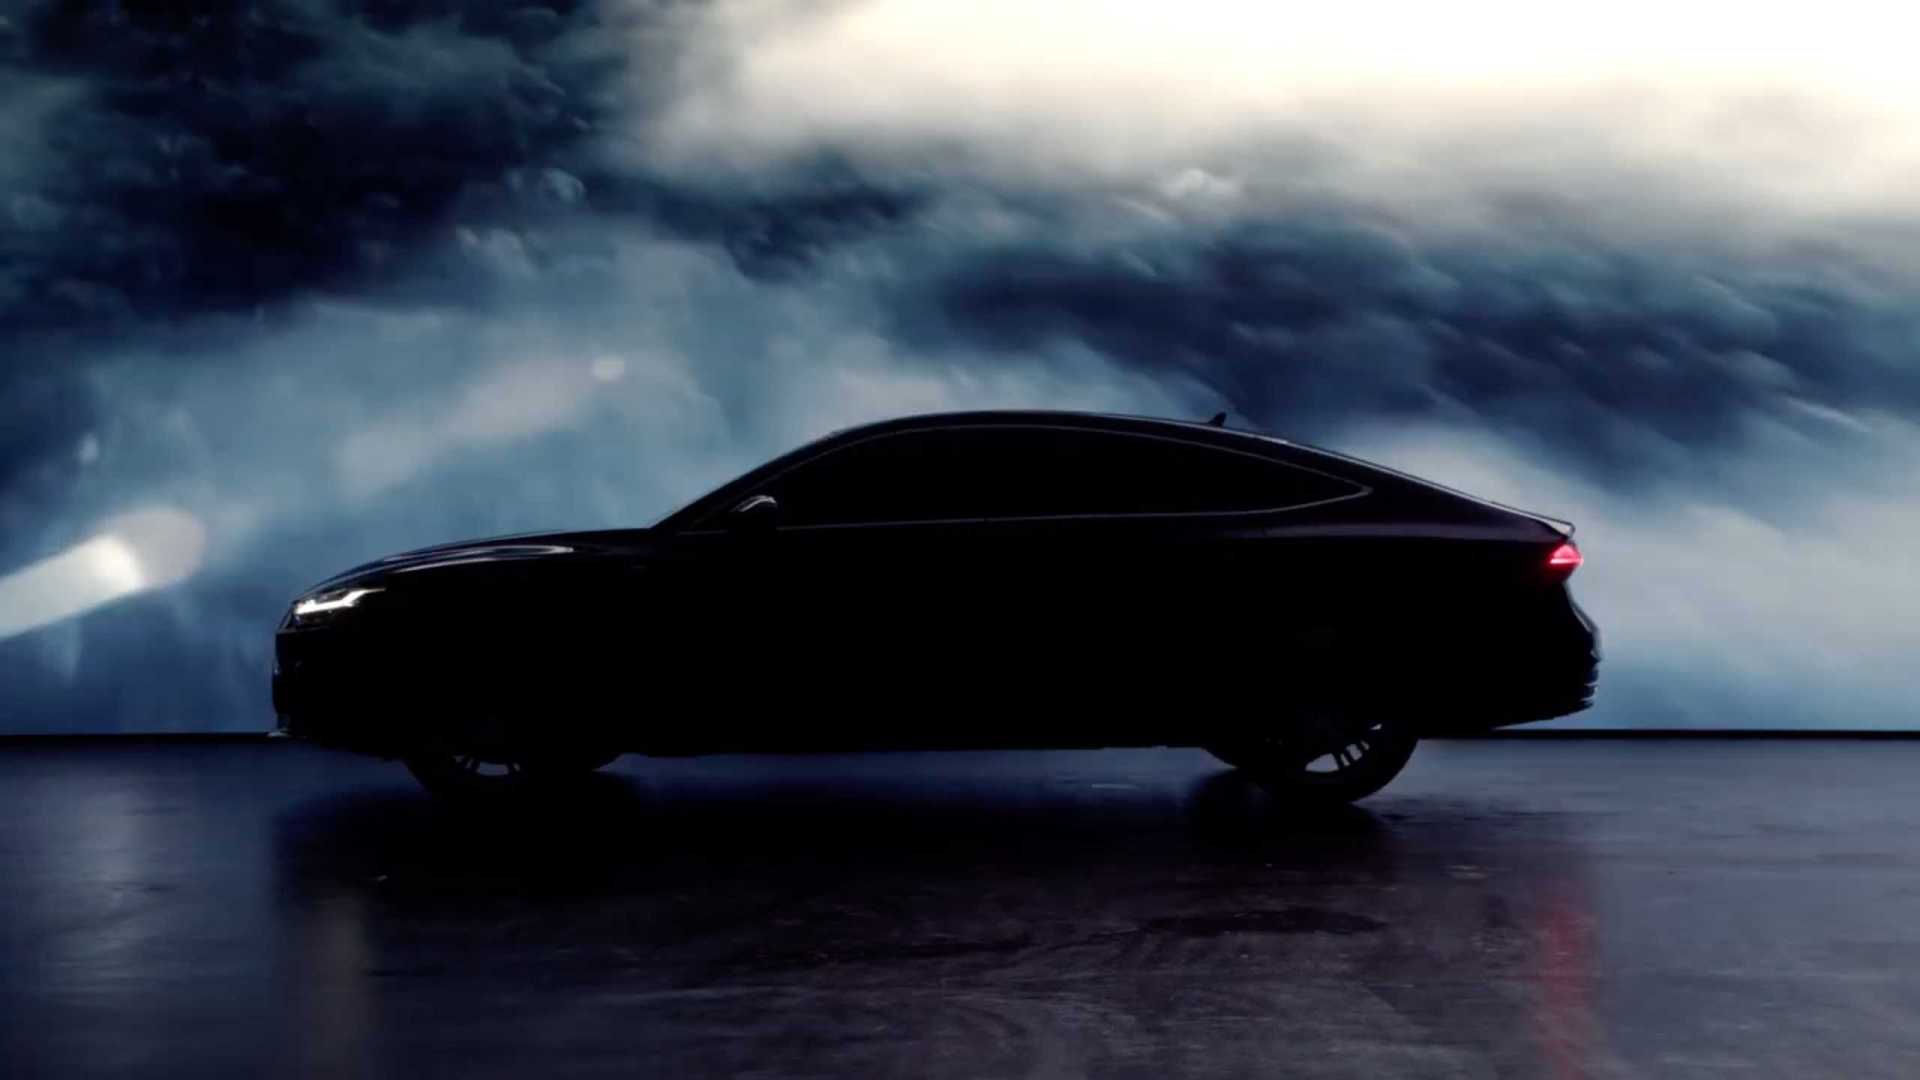 Audi奥迪A7L产品互动视频「风铃篇」